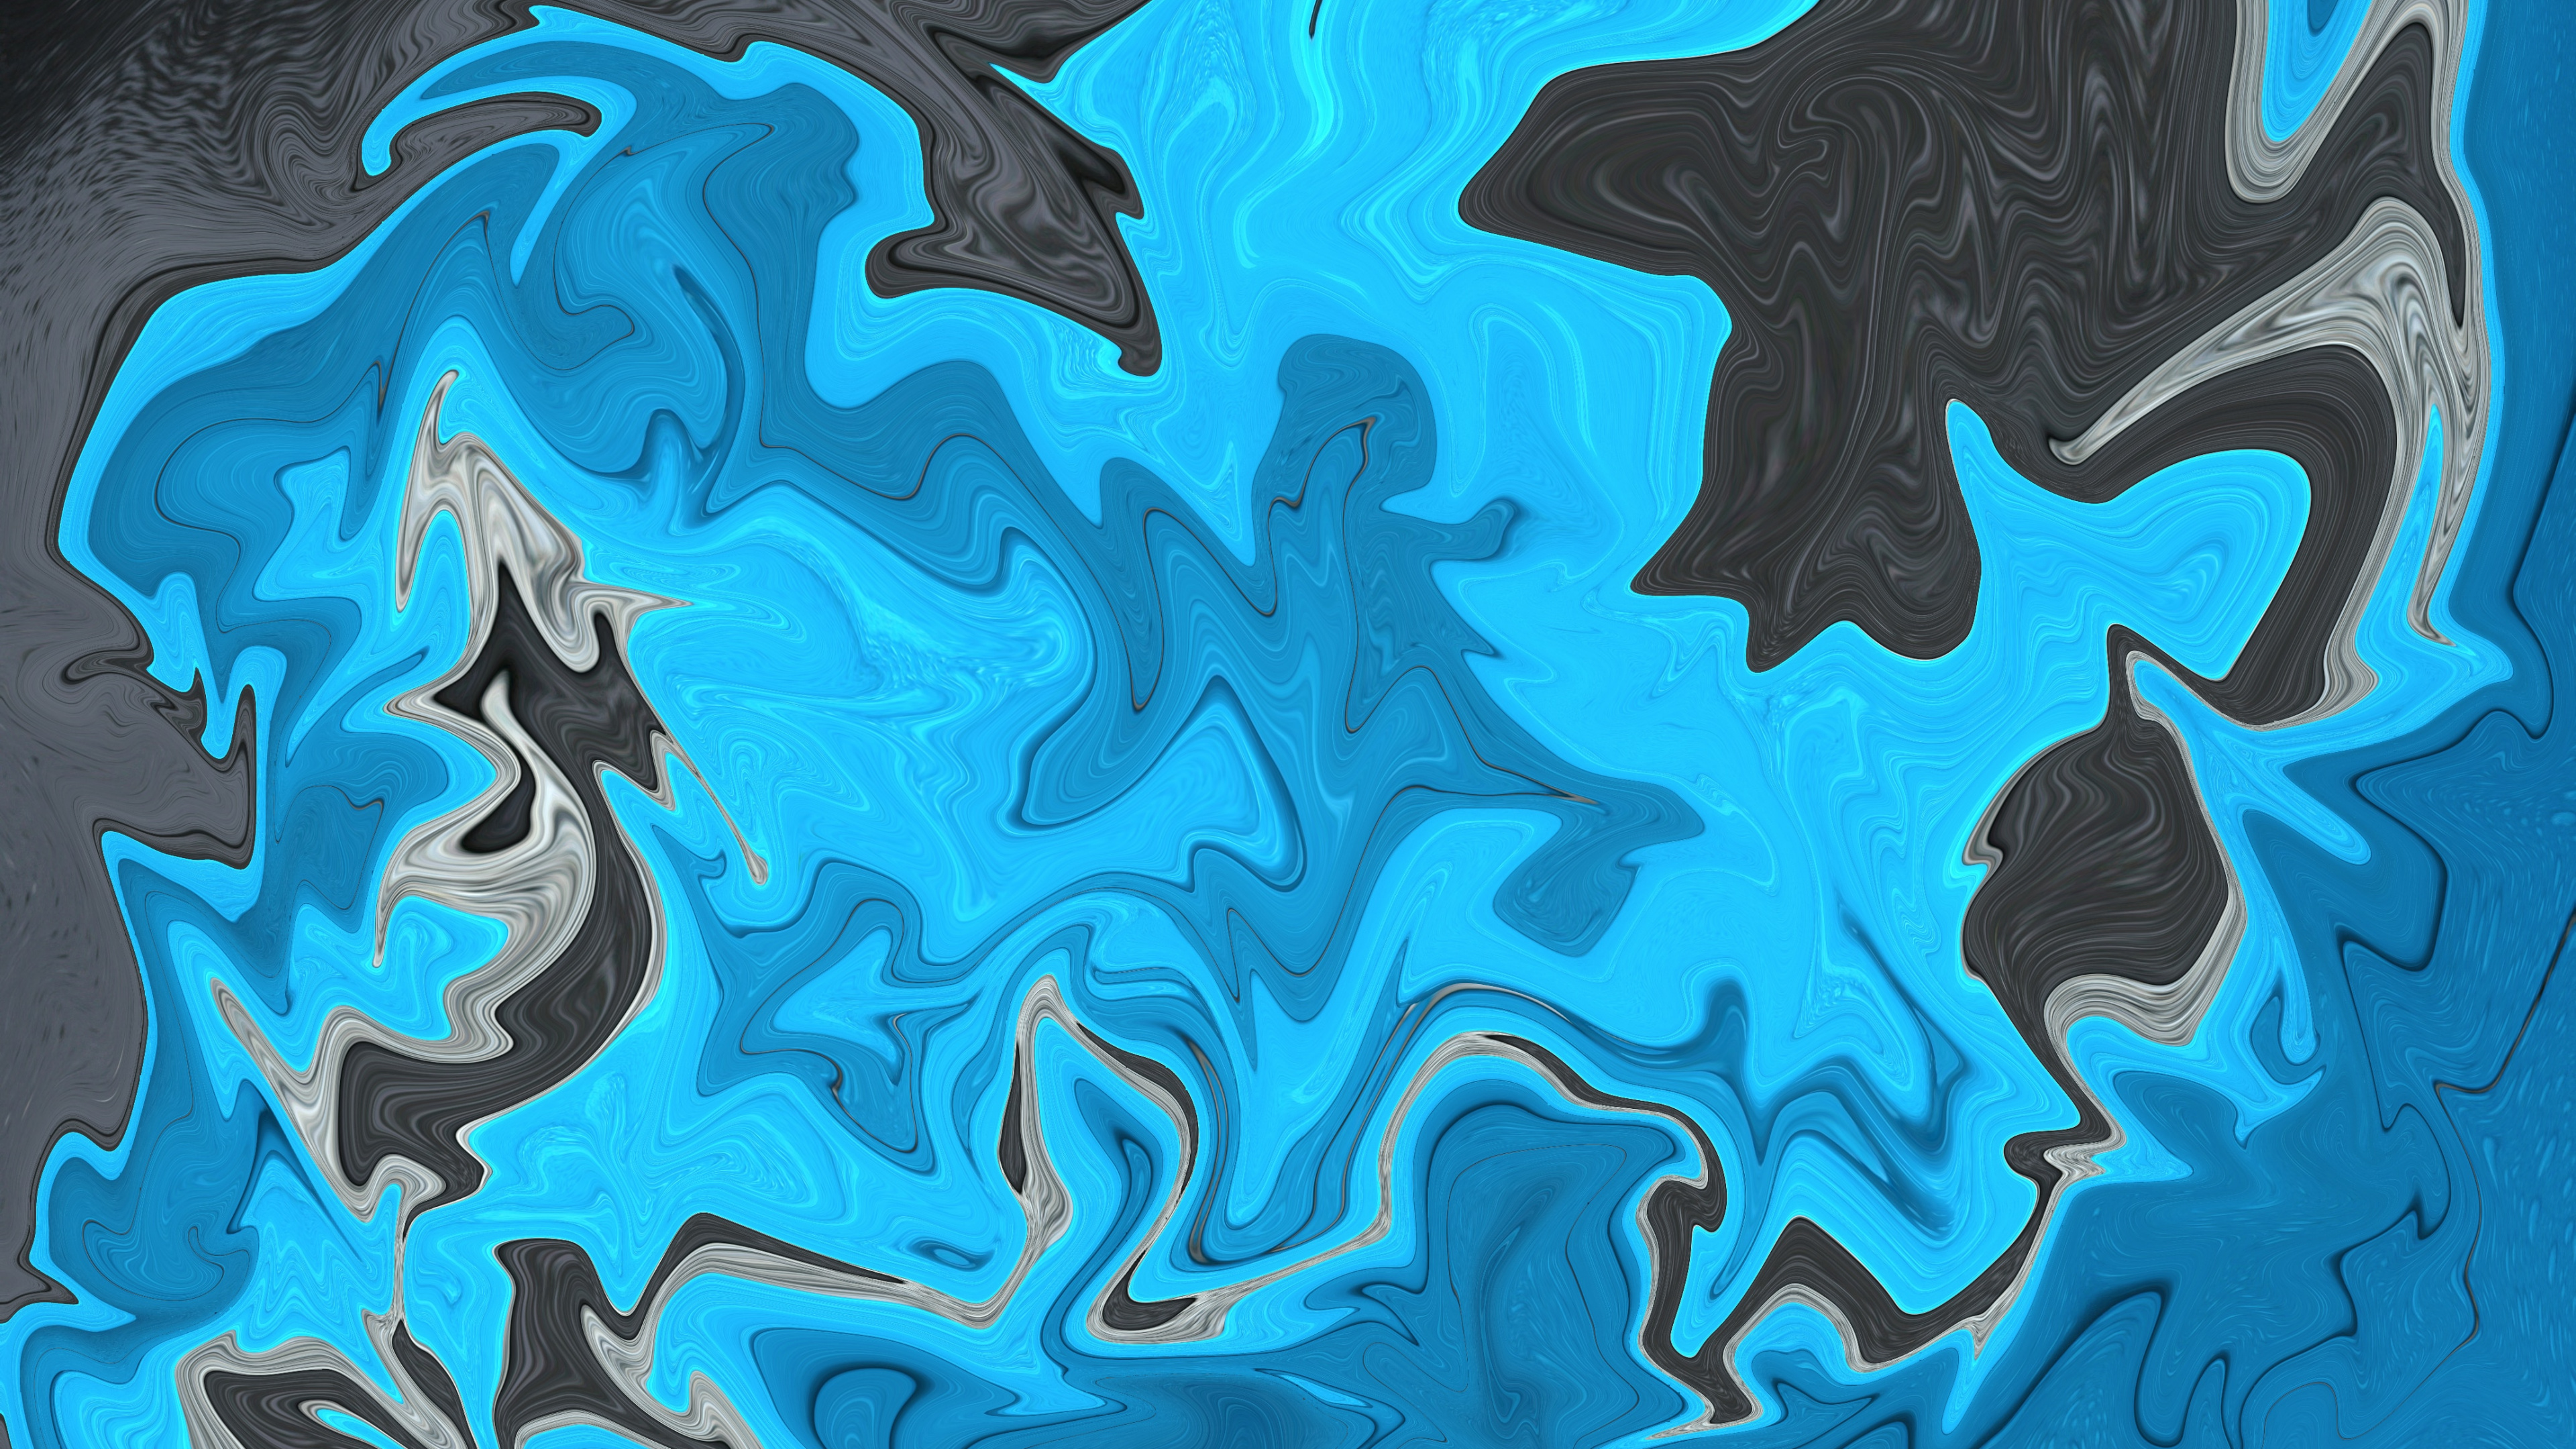 Pintura Abstracta Azul y Negra. Wallpaper in 3840x2160 Resolution